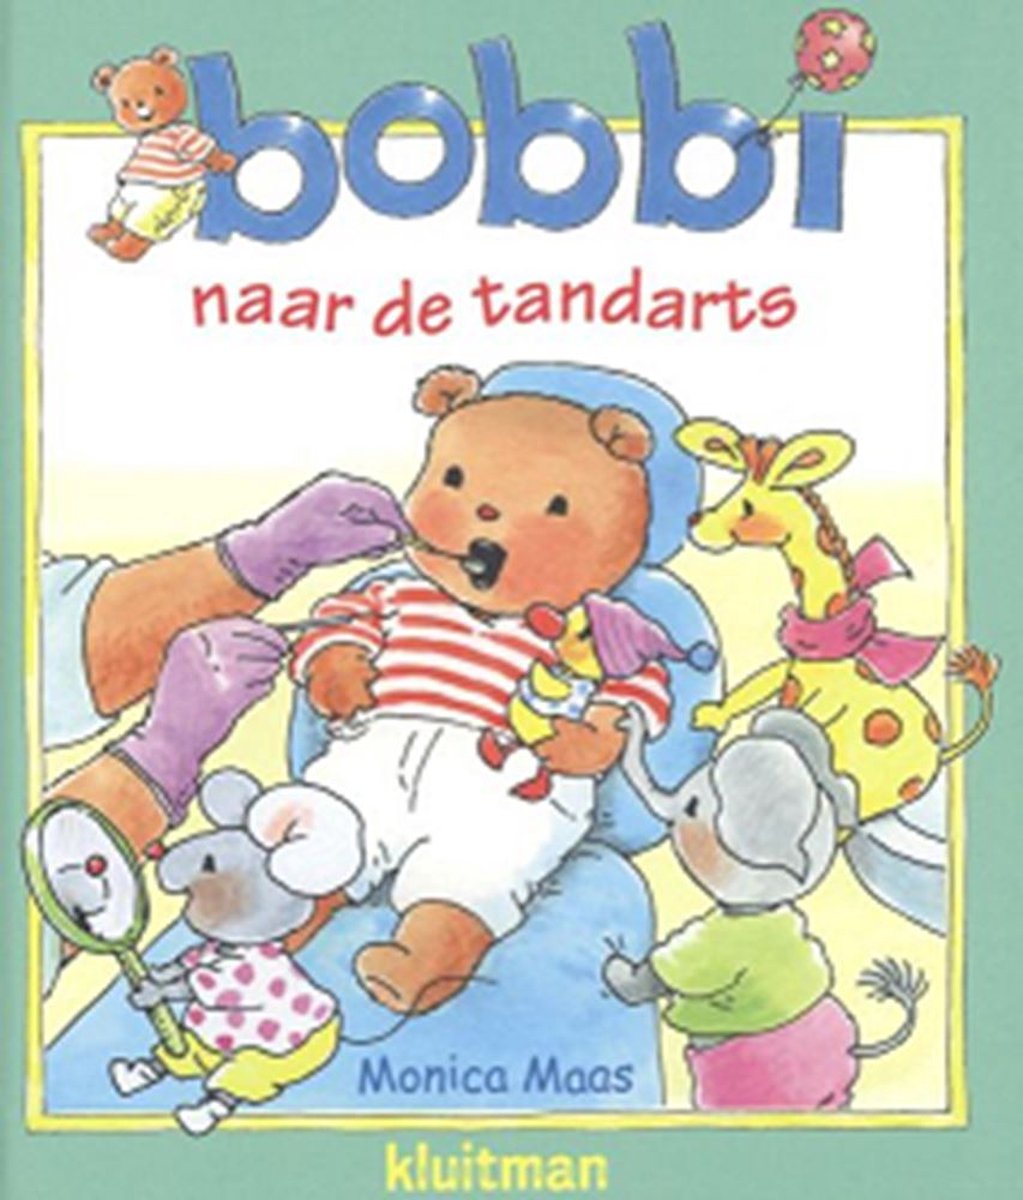 Bobbi - Bobbi naar de tandarts - Monica Maas